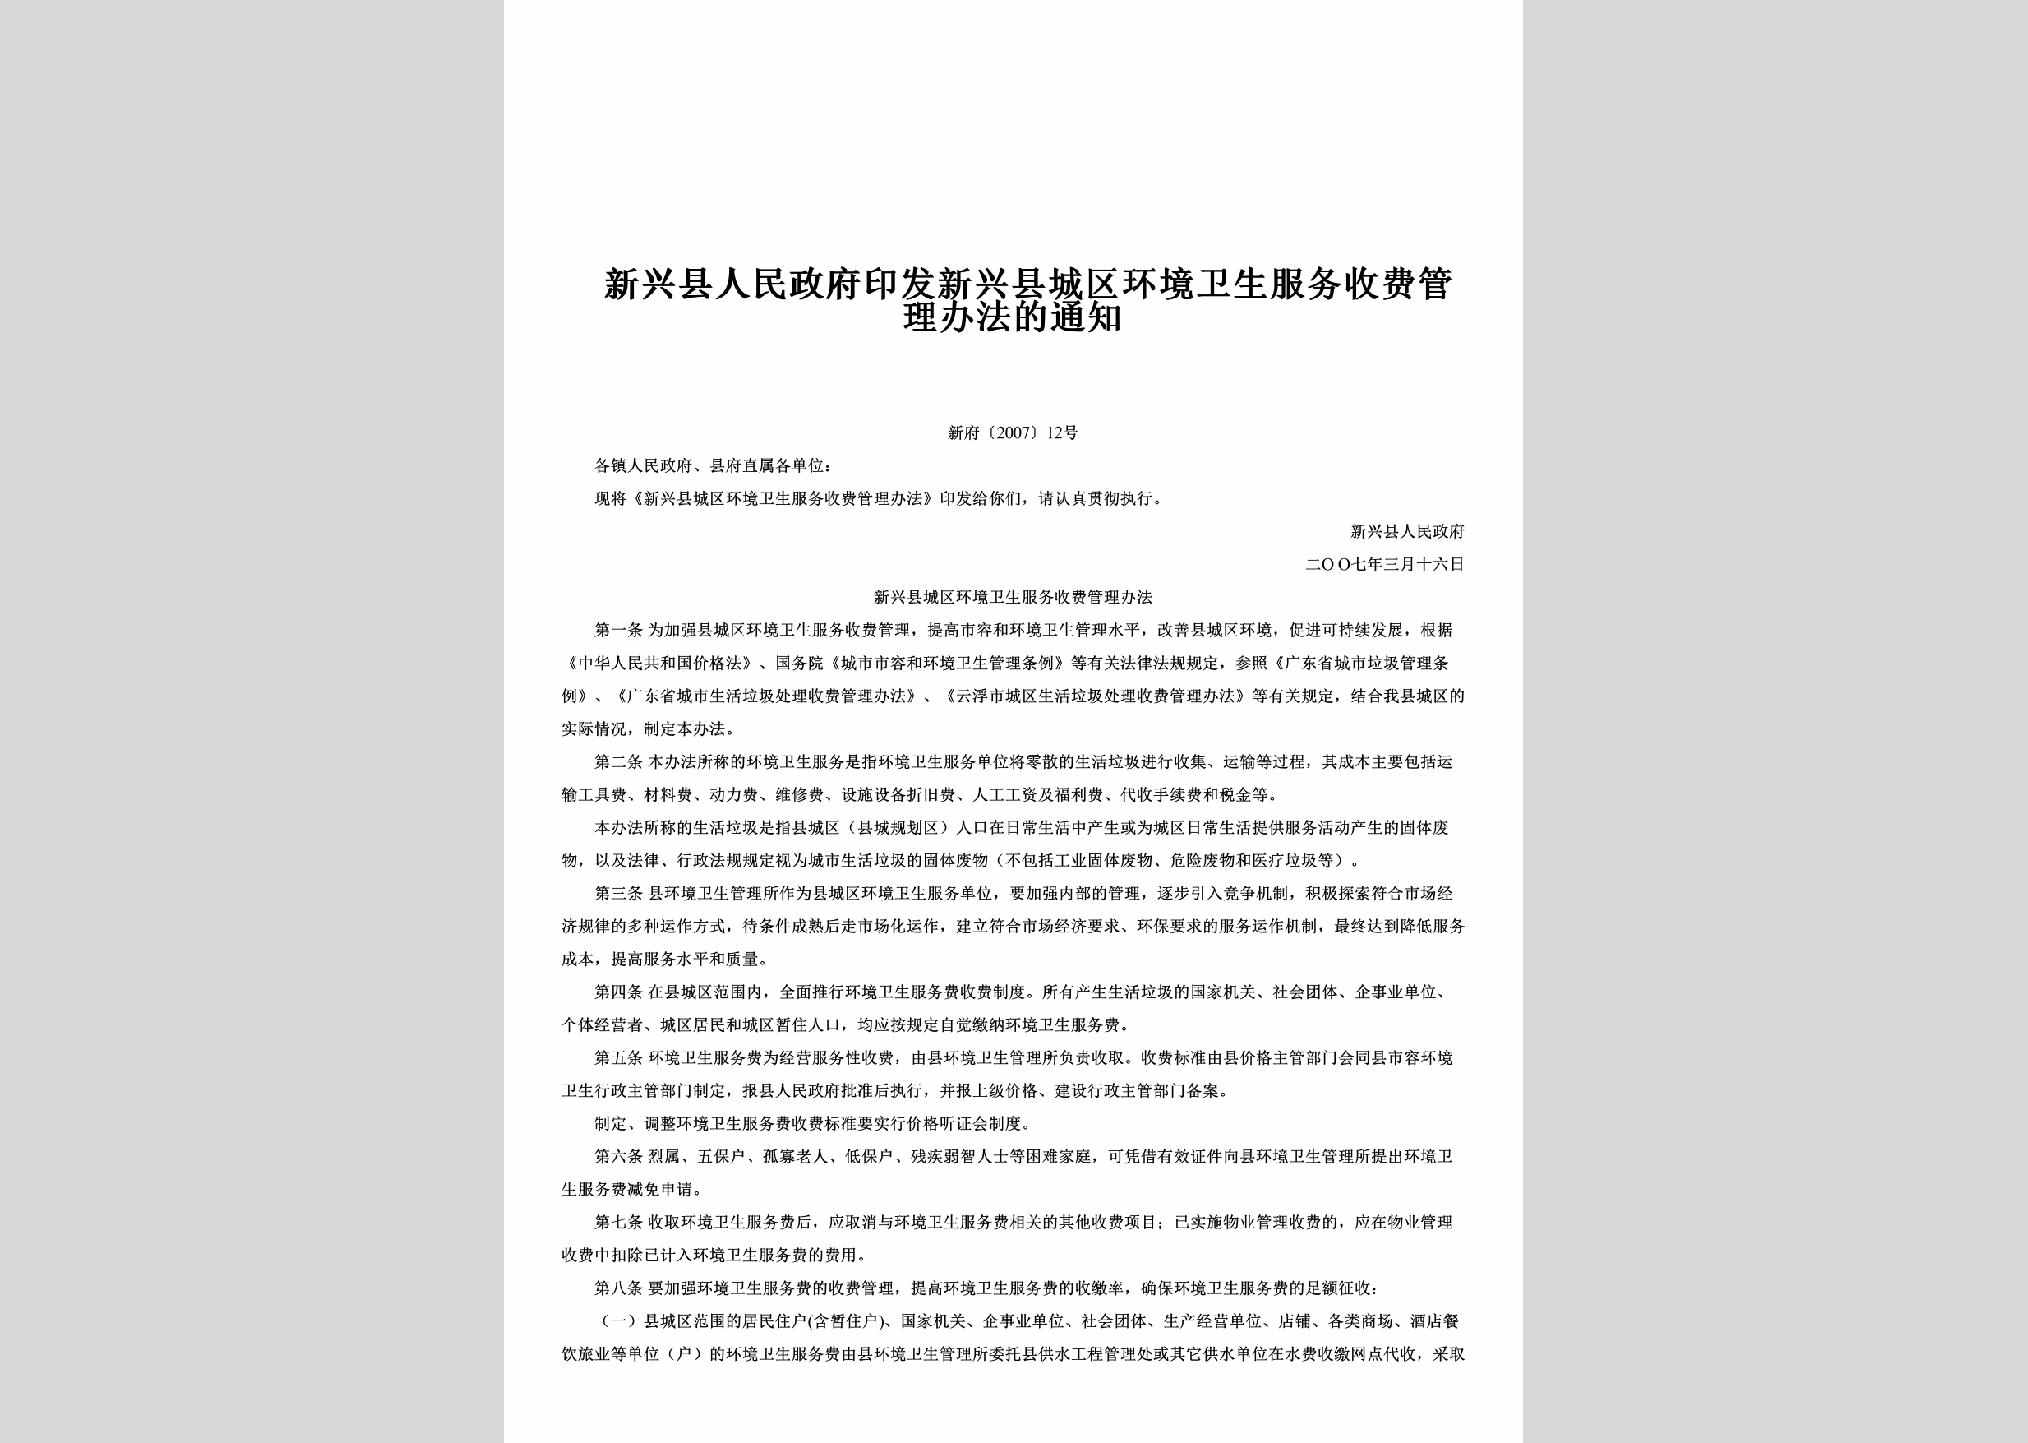 新府[2007]12号：印发新兴县城区环境卫生服务收费管理办法的通知